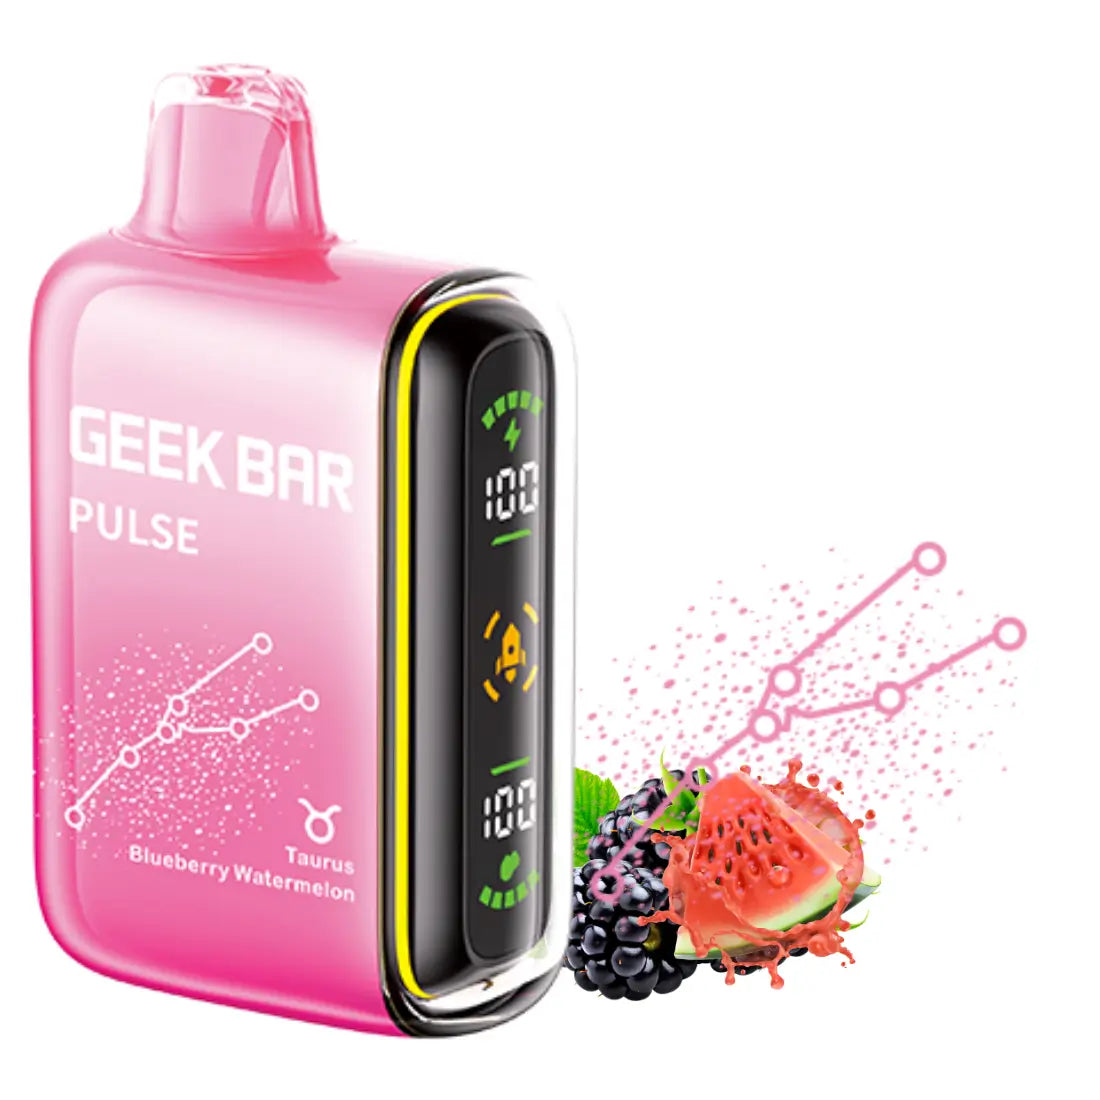 Geek Bar Pulse Blueberry Watermelon